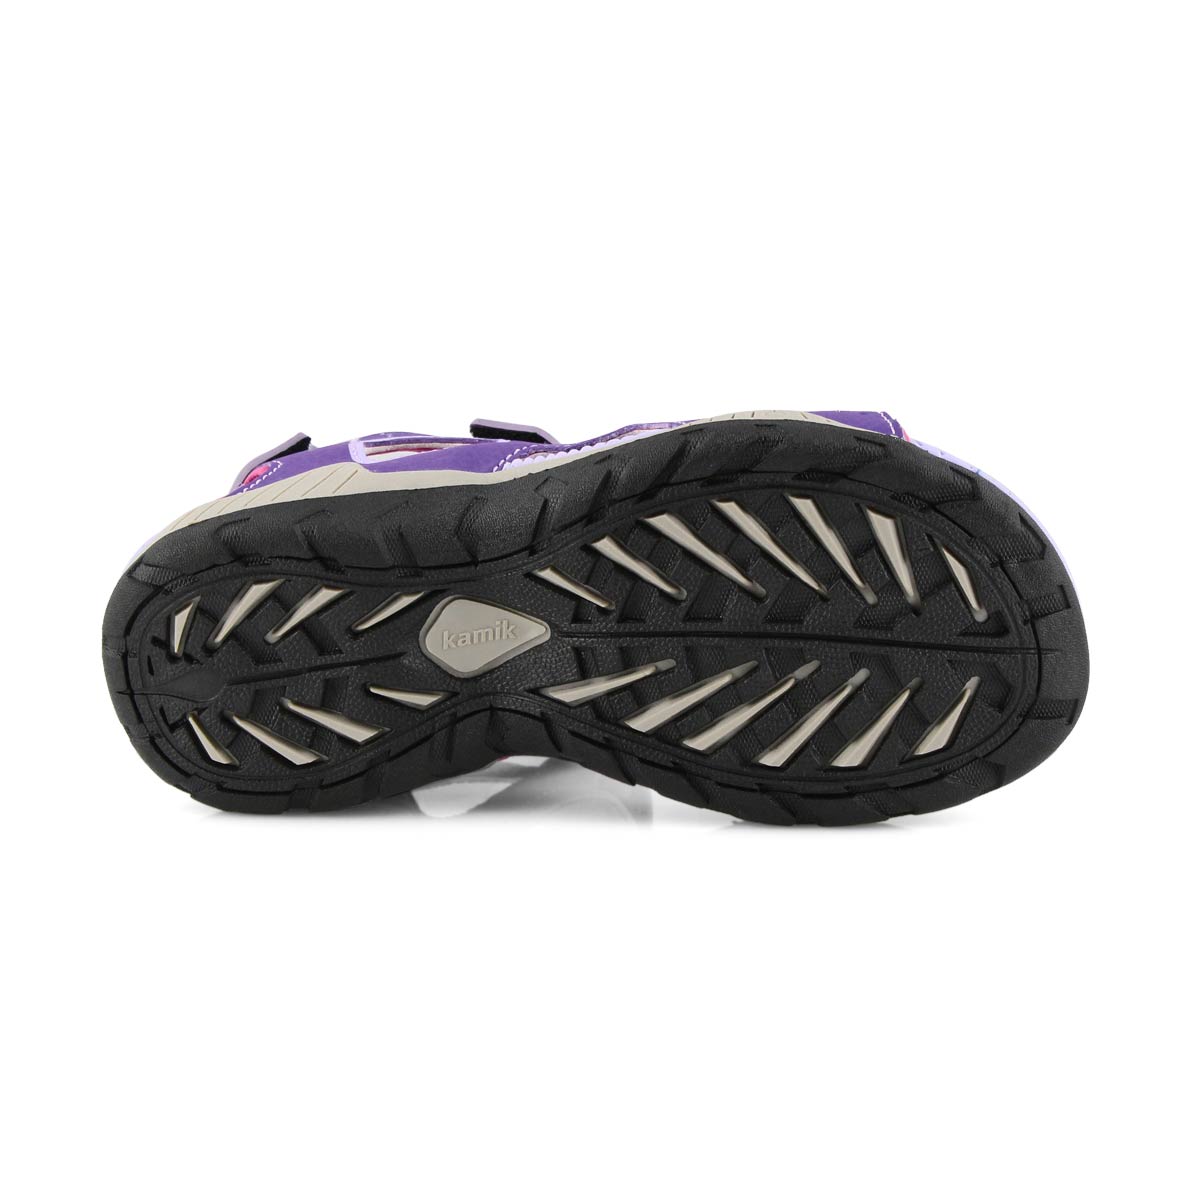 Girls' Lobster 2 Sport Sandal - Purple